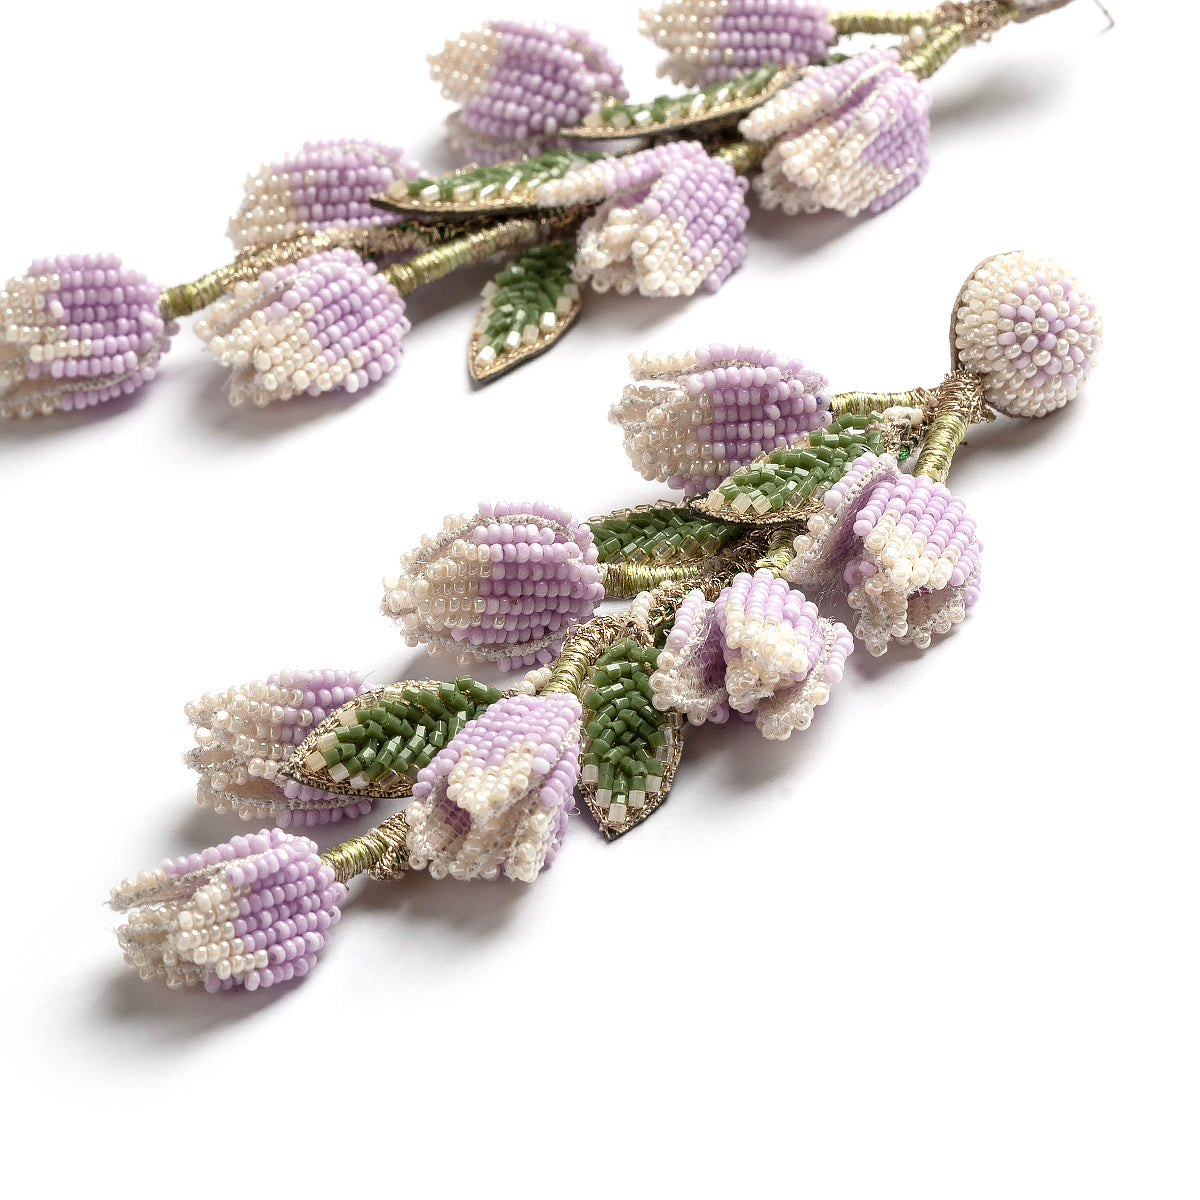 Deepa Gurnani handmade the Madelief earrings in lavender color